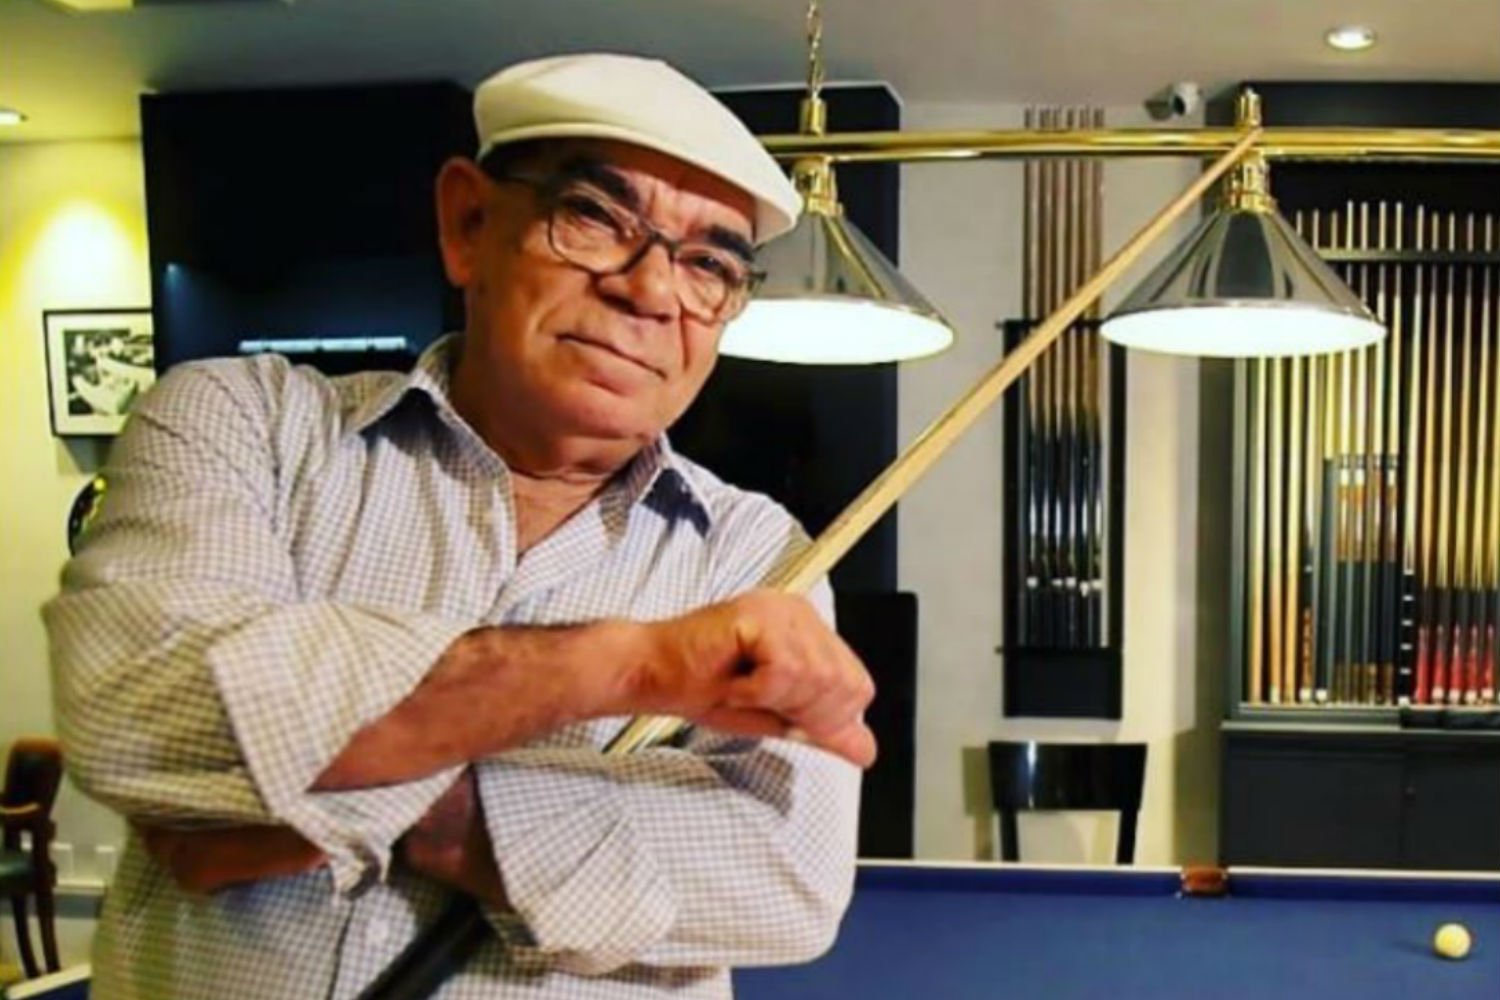 Morre Rui Chapéu, maior jogador de sinuca do Brasil, aos 79 anos